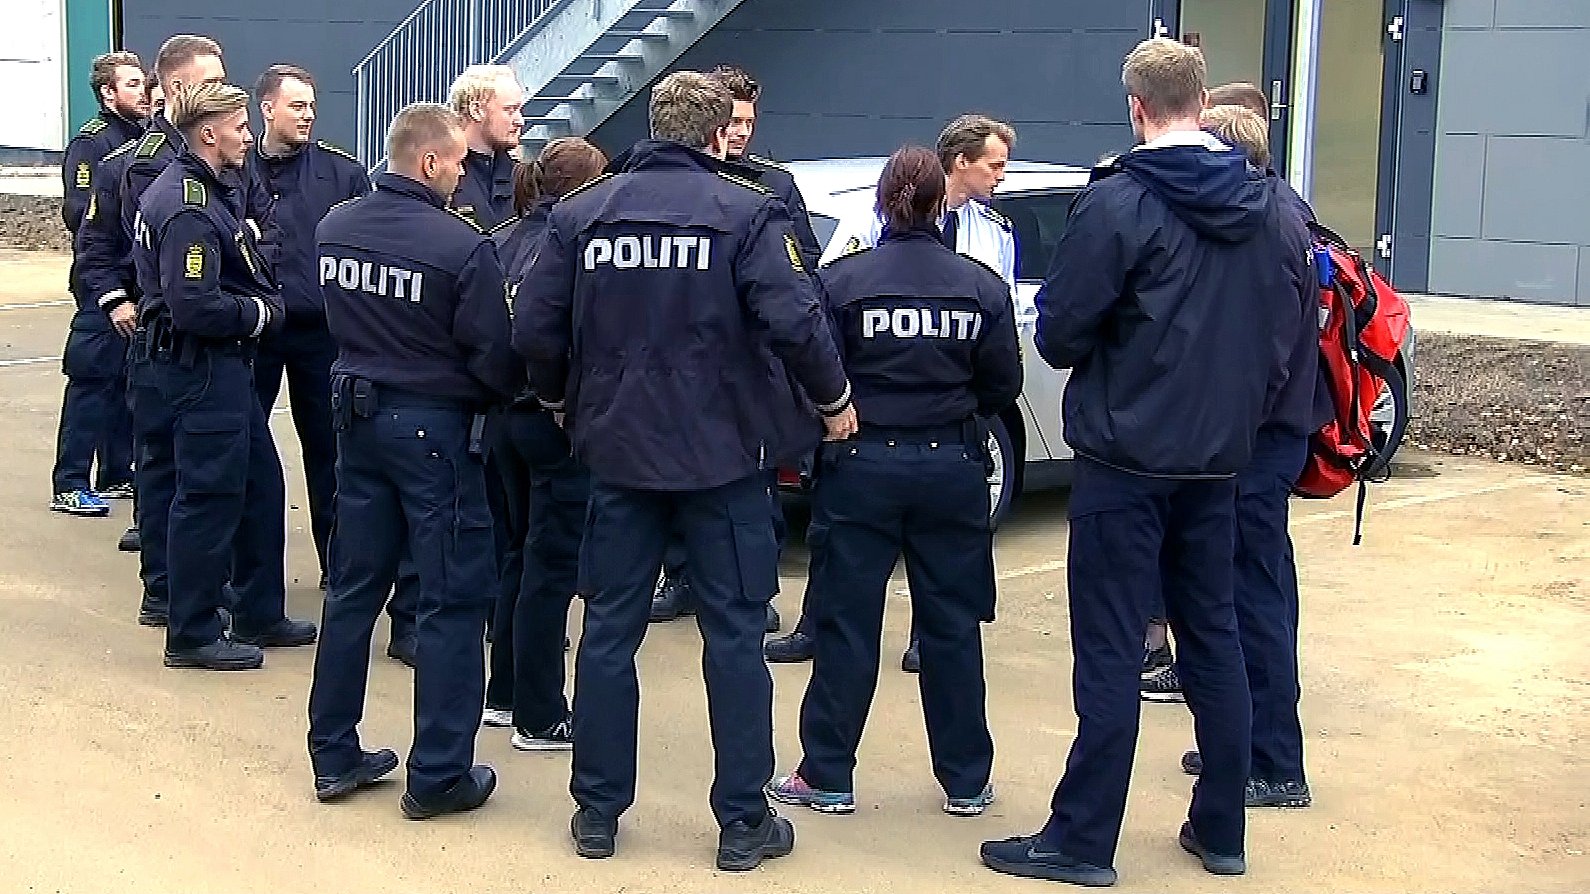 Fredericia mere sikker? Politielever øje med kriminelle i fritiden | TV SYD